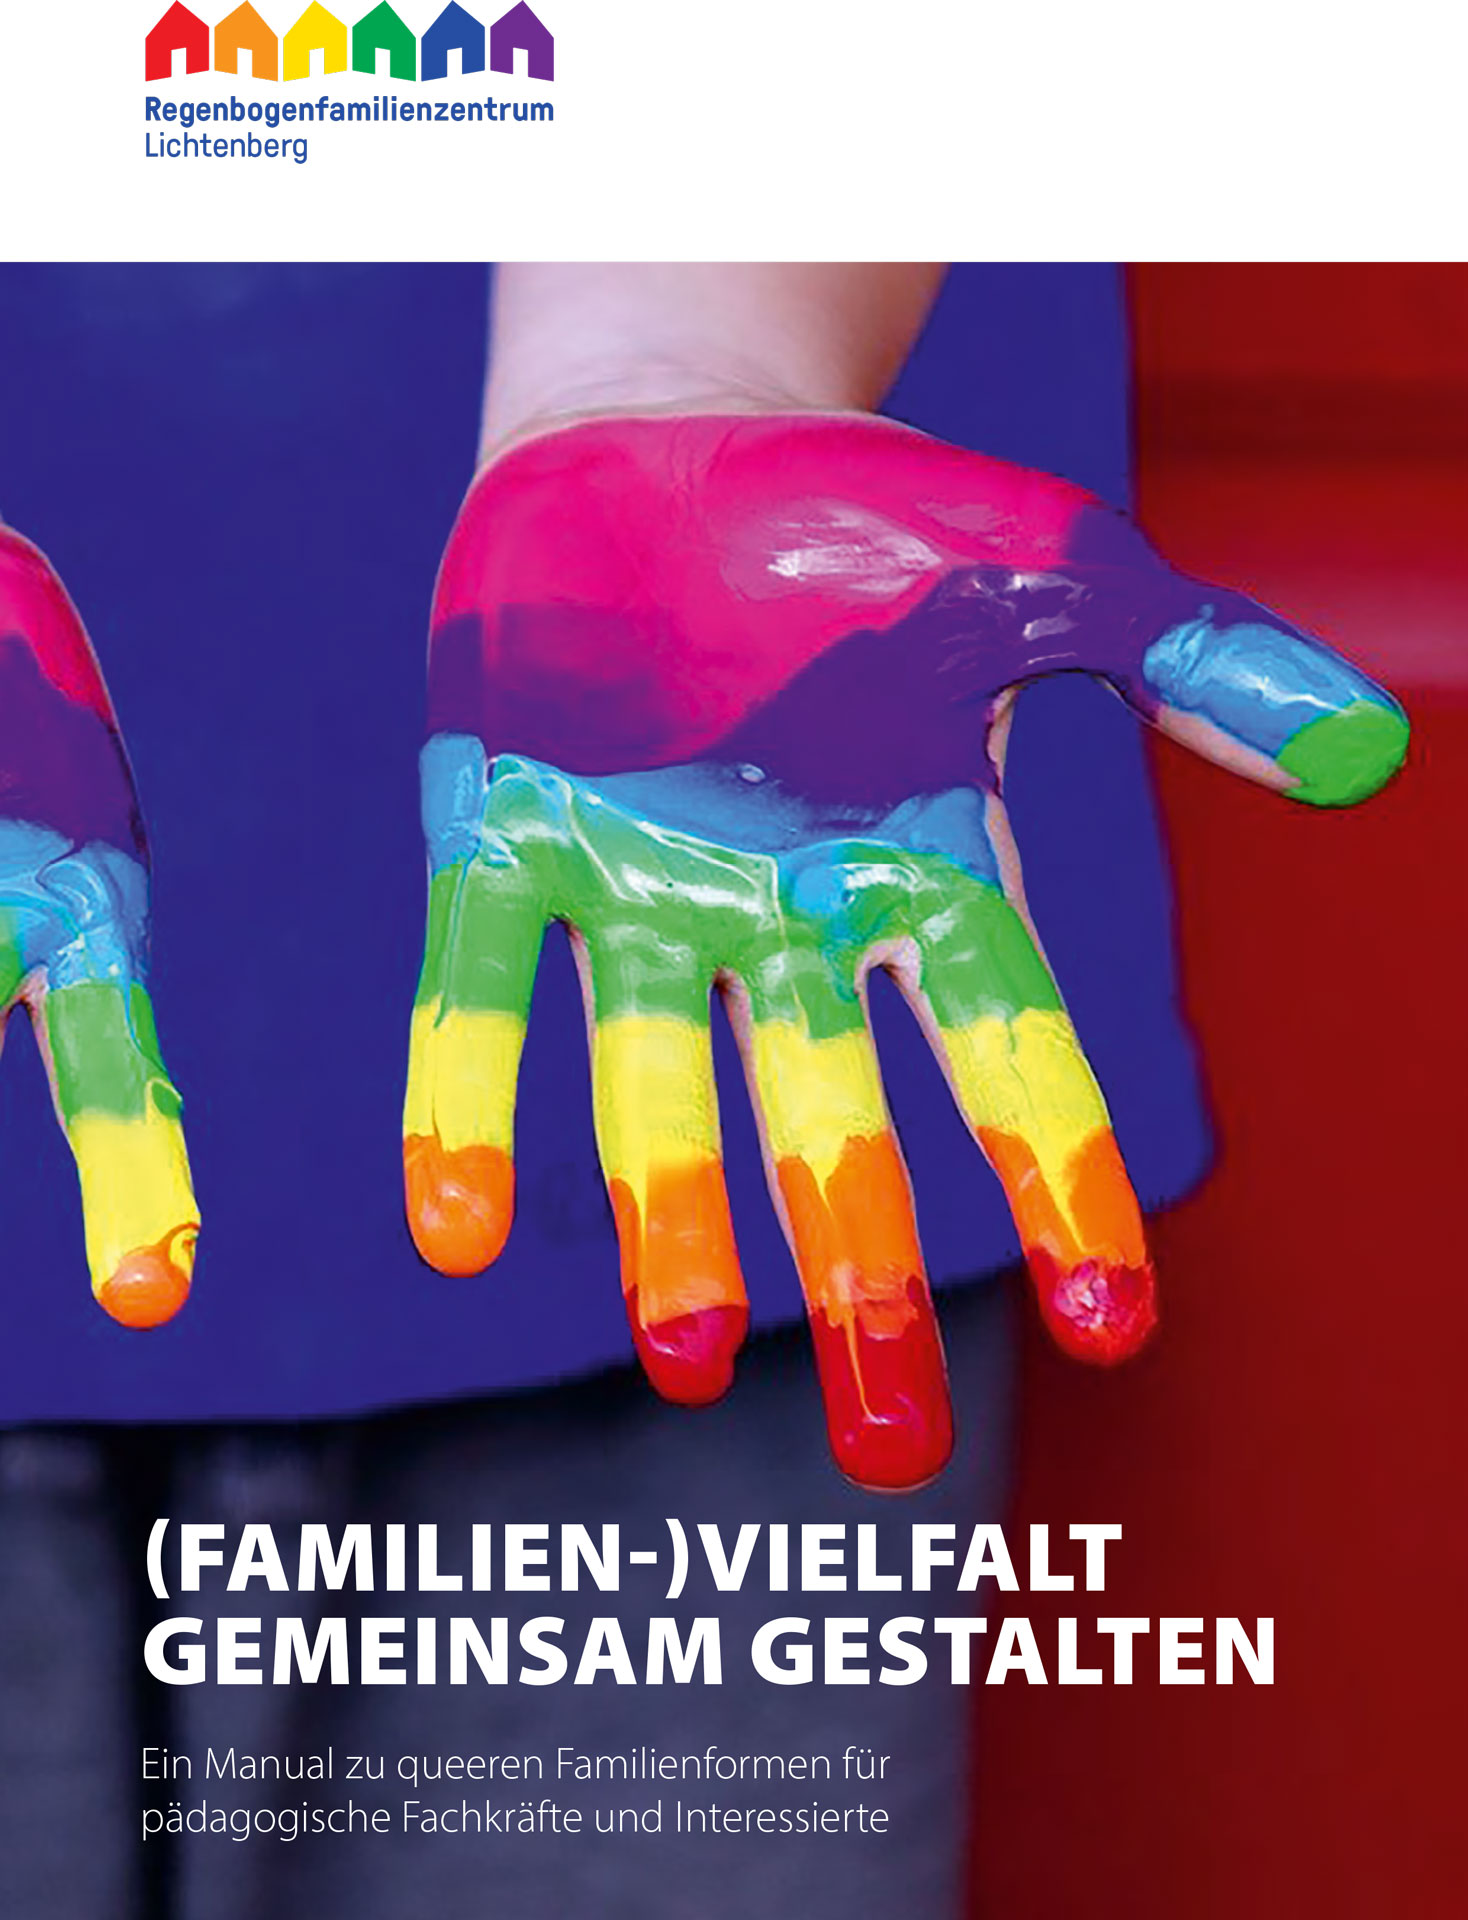 Titel (Familien-)Vielfalt gemeinsam gestalten. Ein Manual zu queeren Familienformen für pädagogische Fachkräfte und Interessierte